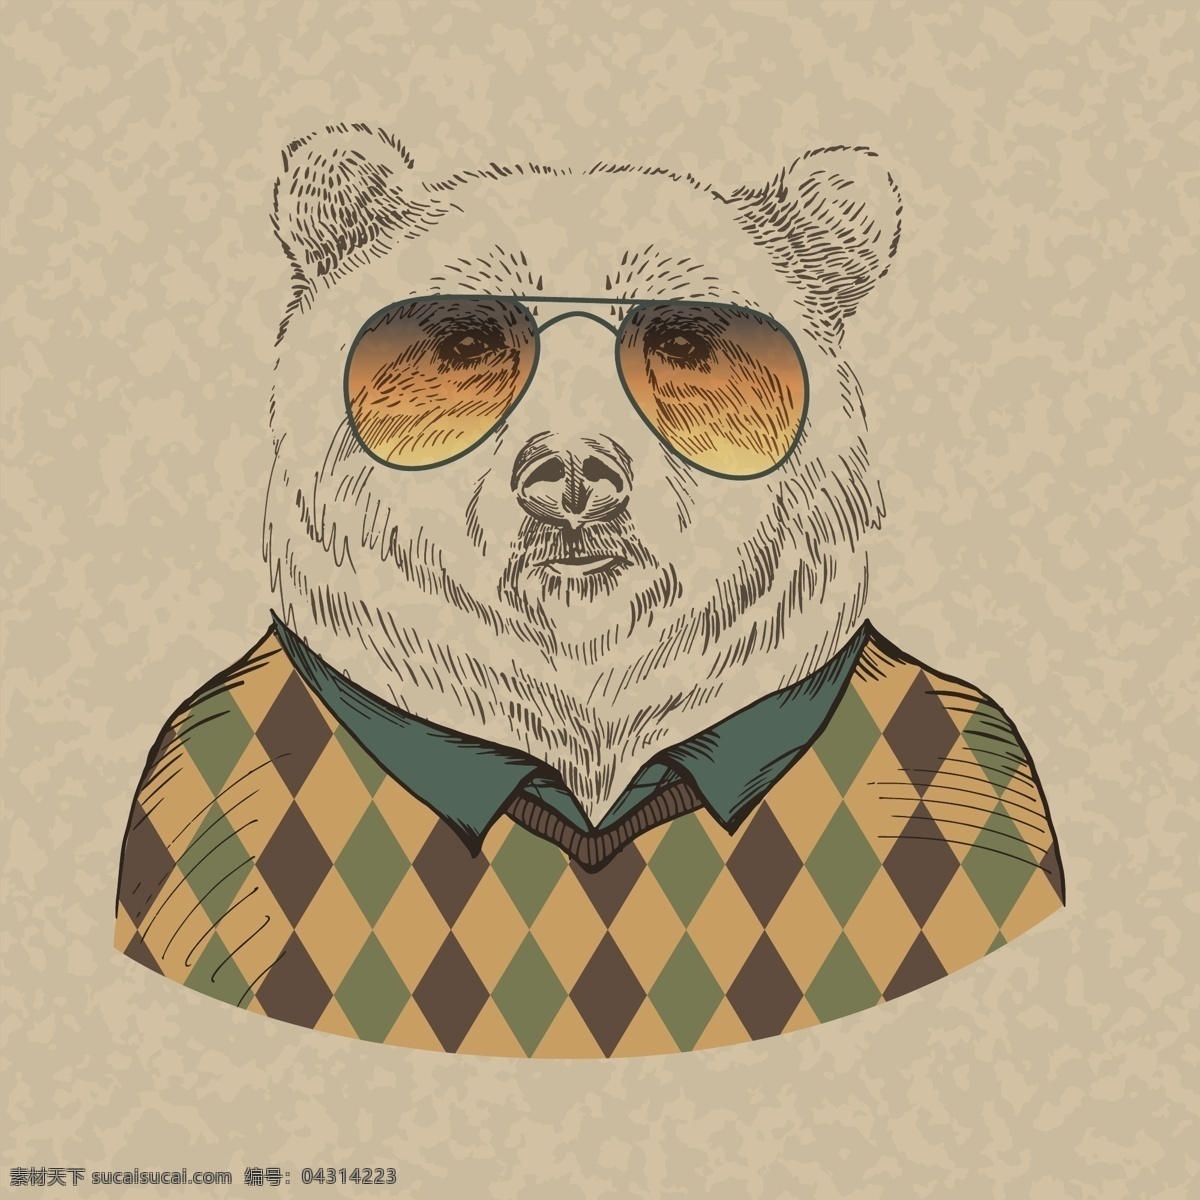 熊先生 小熊 格子毛衣 眼镜 时尚动物 熊爷爷 动物 机器人 底纹边框 背景底纹